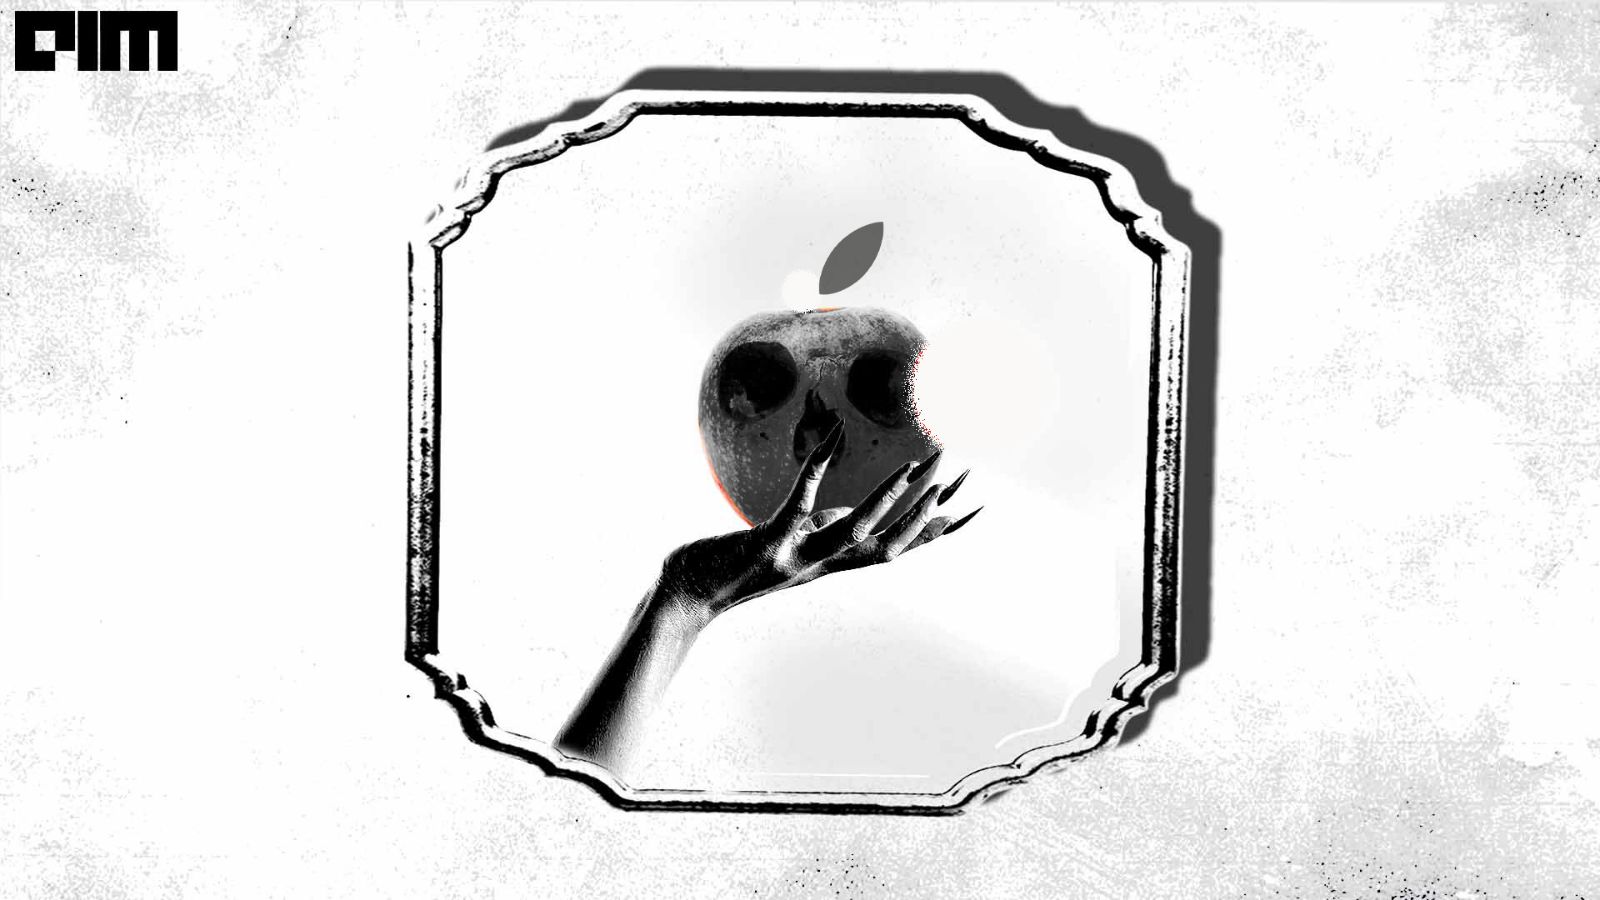 Meet Ferret-UI, Apple